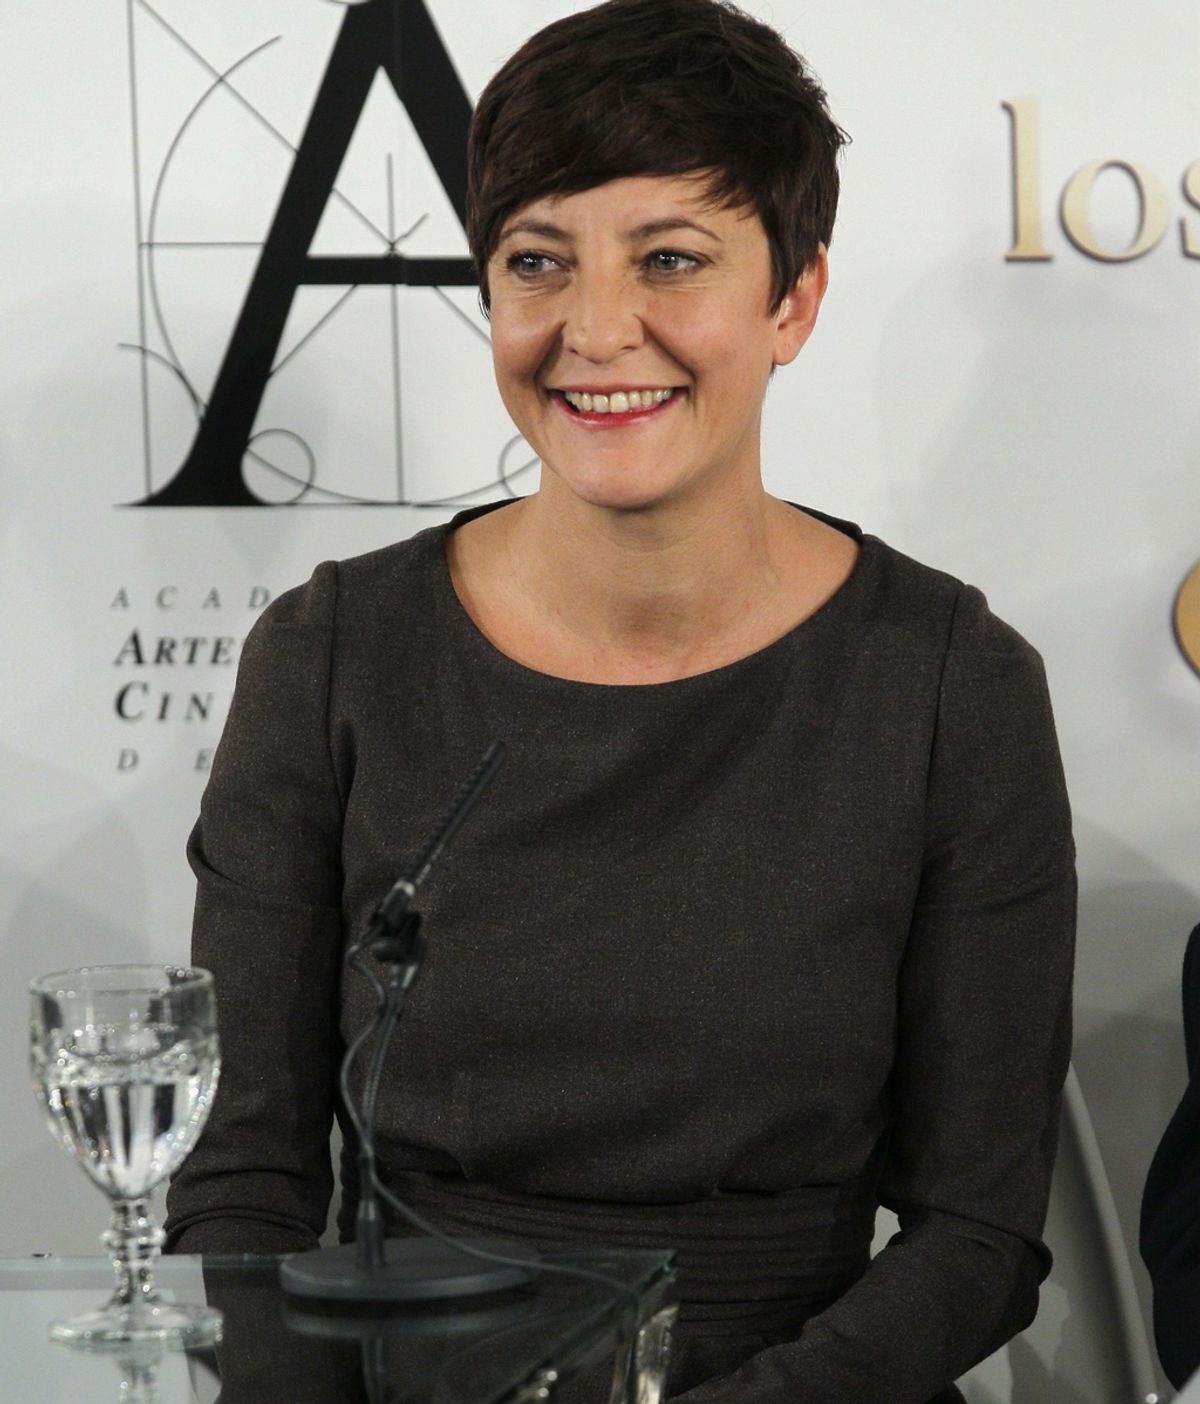 Eva Hache presentará los Goya 2013